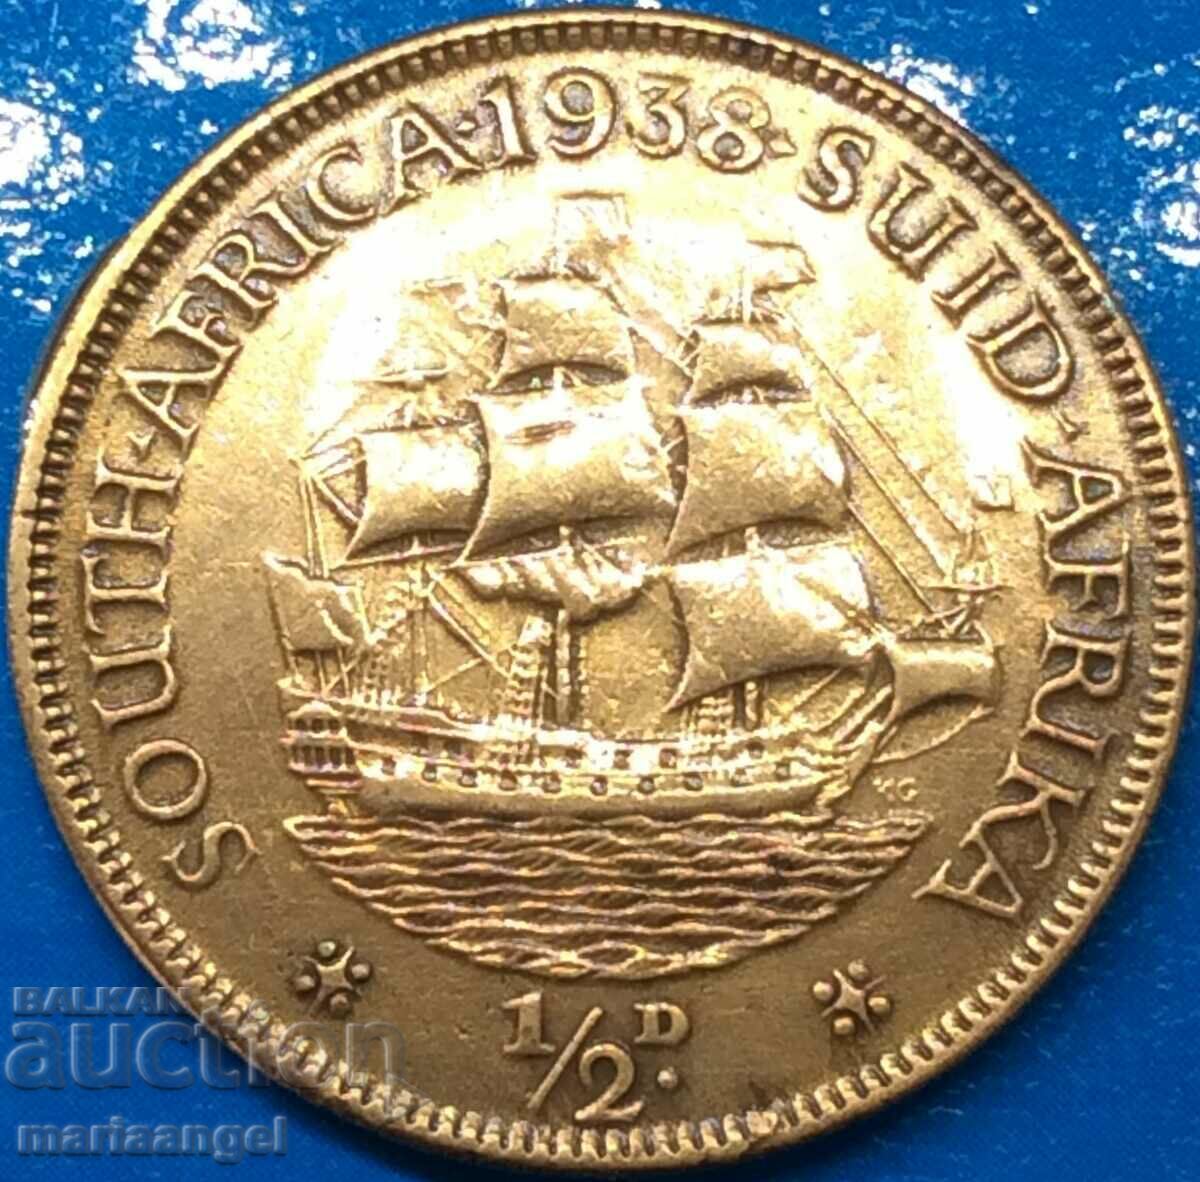 1/2 penny 1938 Africa de Sud culoare specială